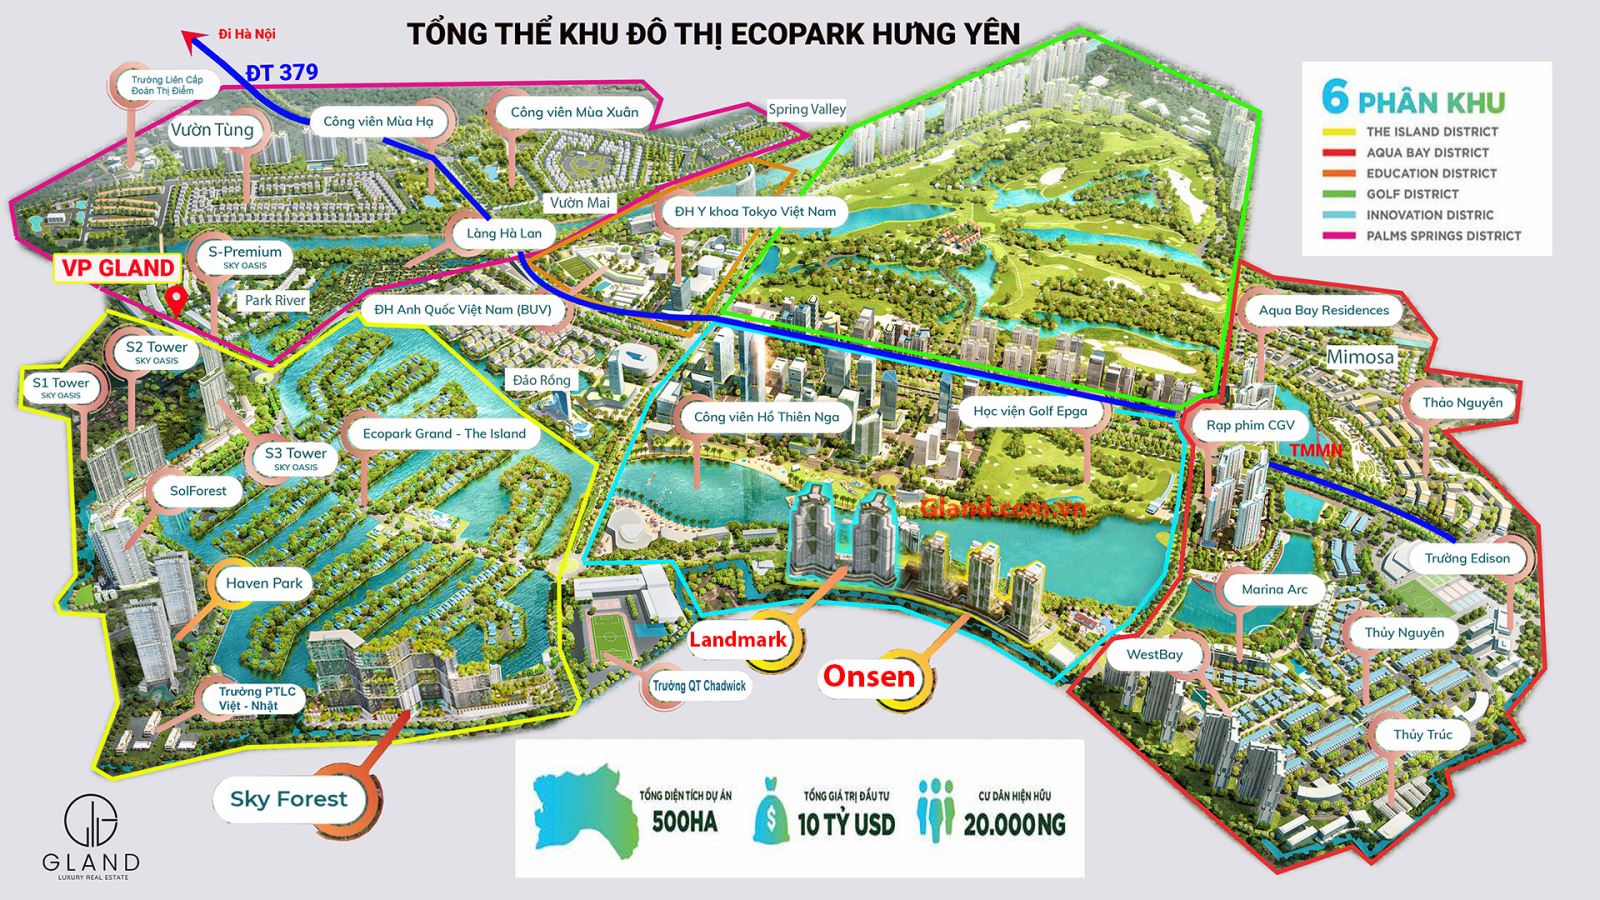 Bản đồ Ecopark và thông tin hướng dẫn di chuyển nội khu đô thị